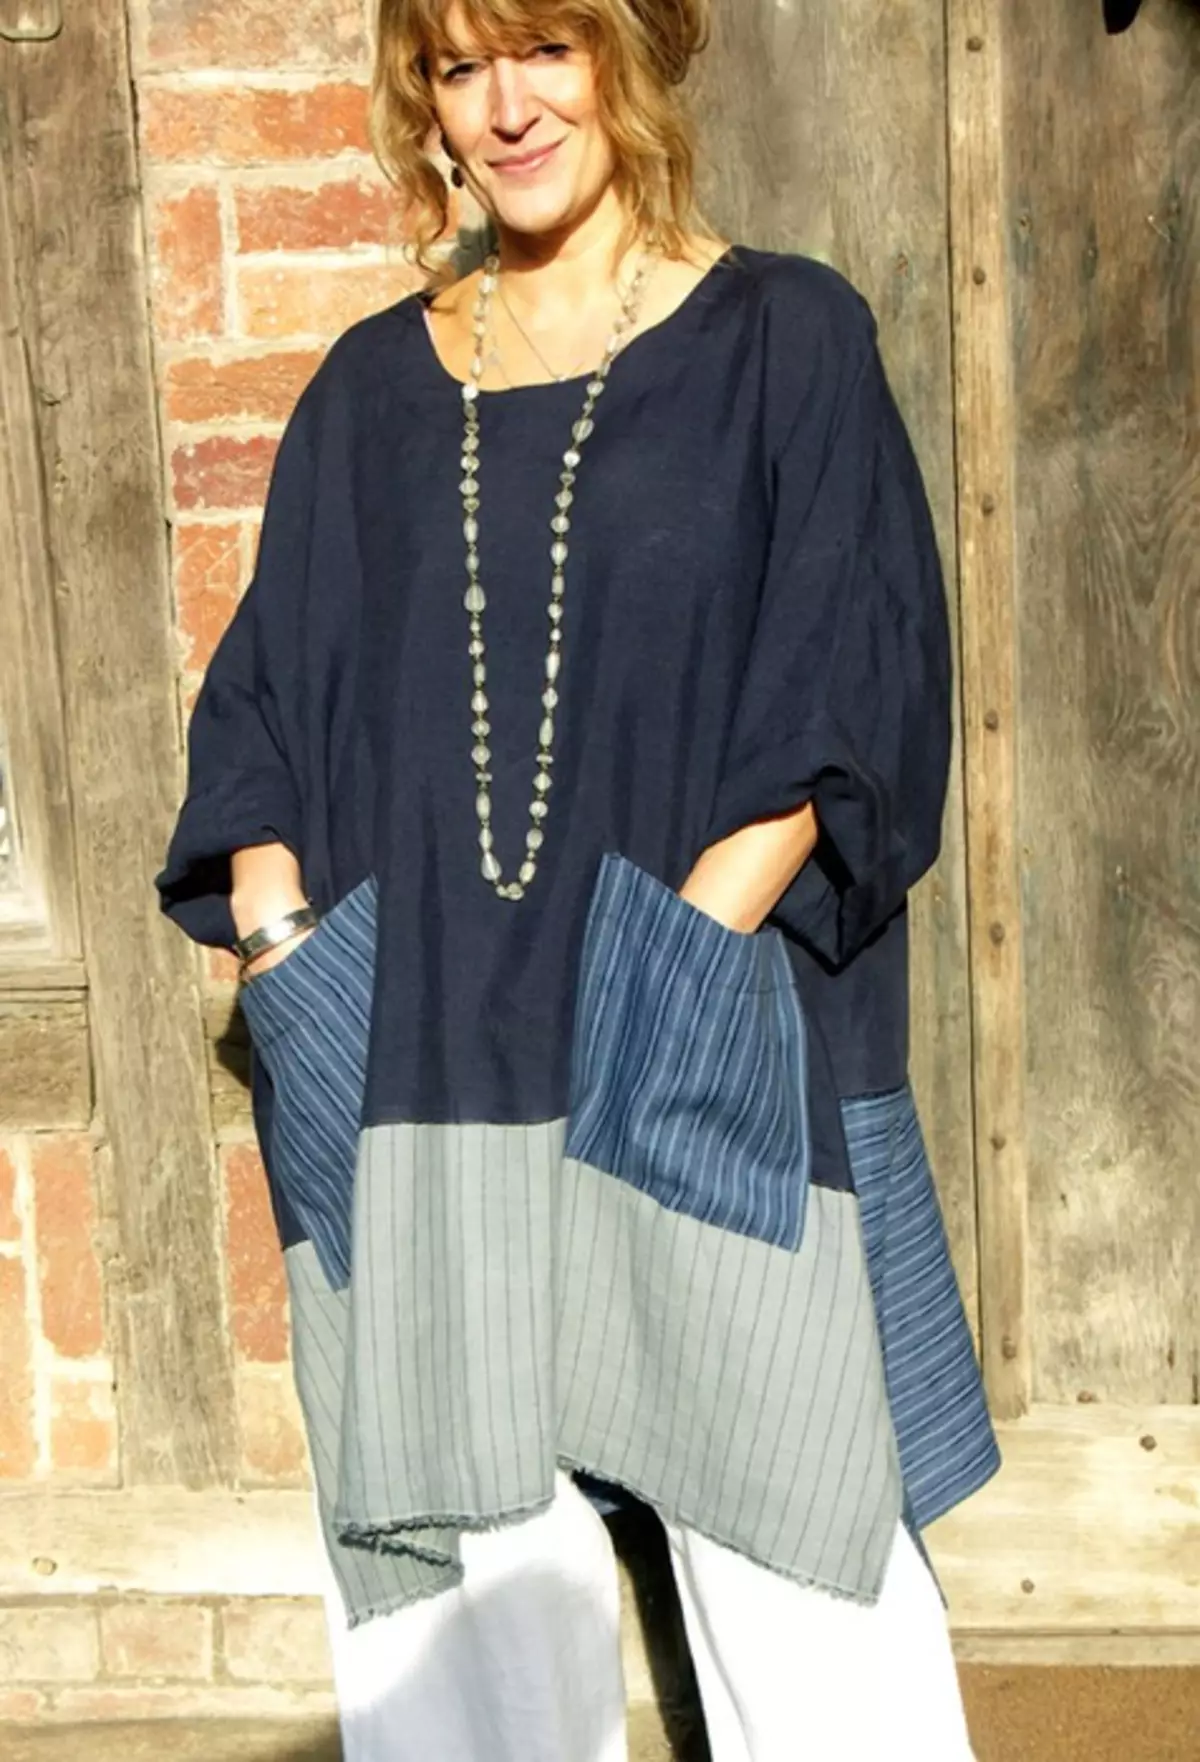 Bocho-style pour complète (64 photos): tricoté de style boho pour les femmes après 50, règles d'utilisation des éléments Booho en vêtements 14862_17